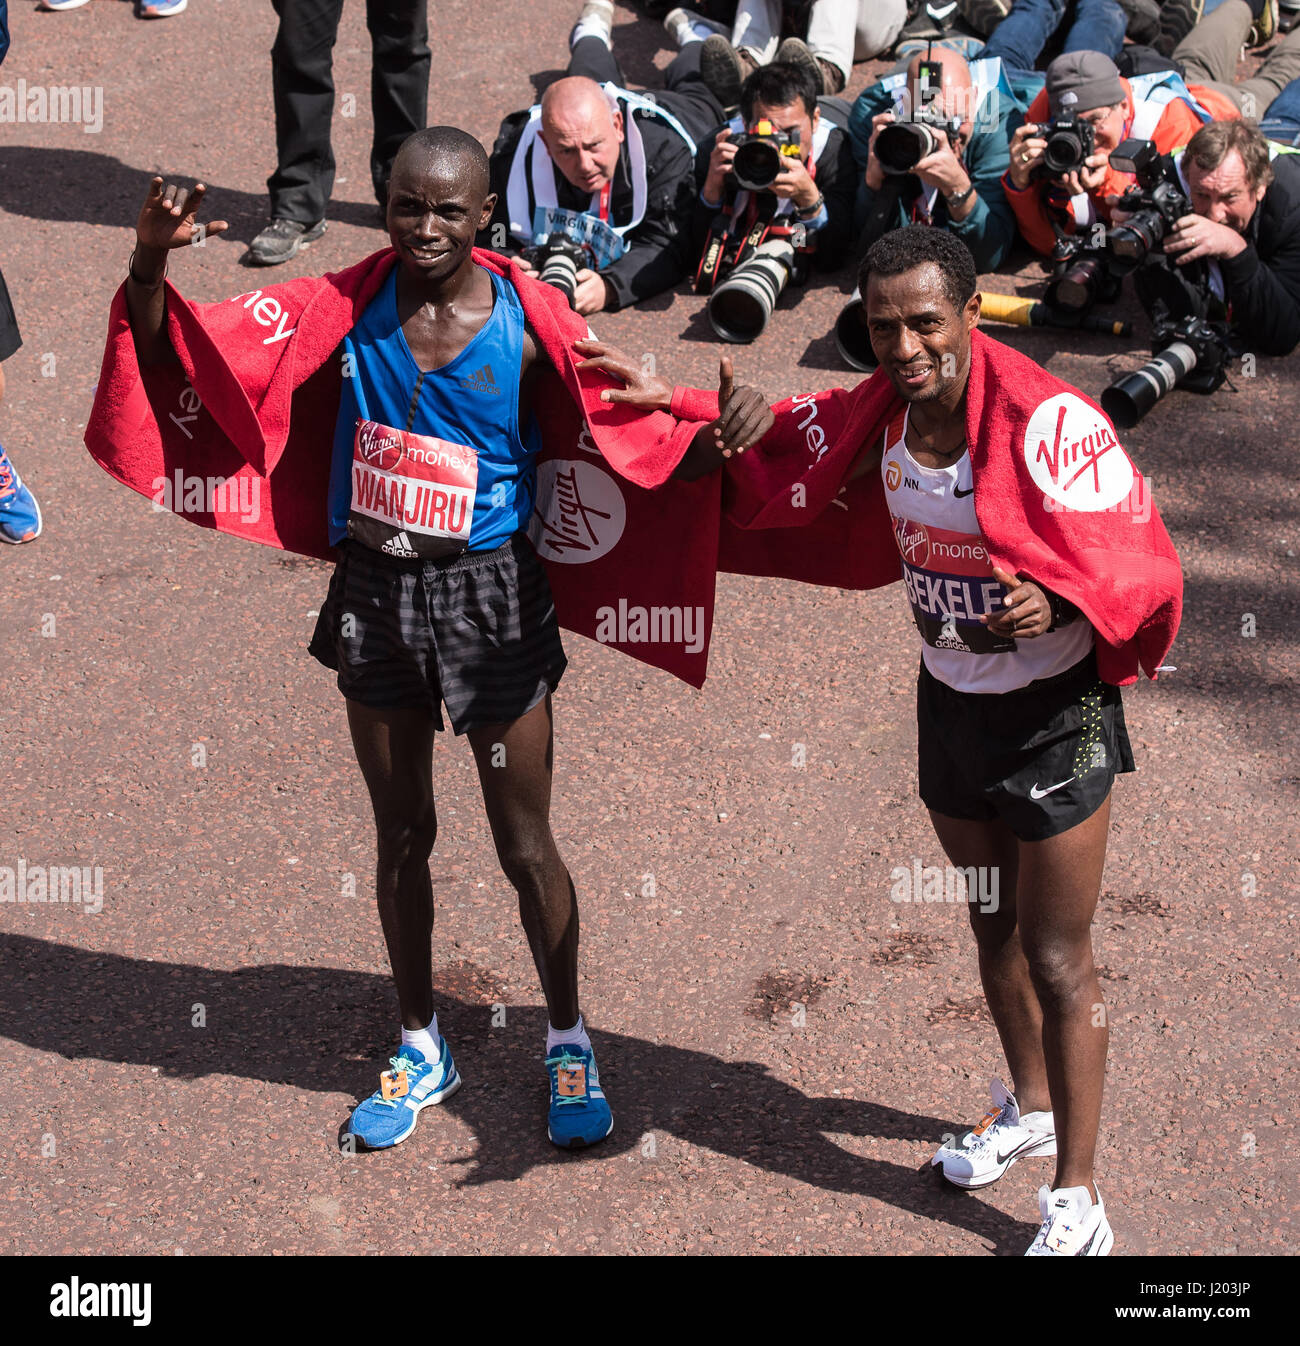 London, UK. 23. April 2017. London, 23. April 2017: Daniel Wanjiru Kenya,(left) Gewinner des Elite-Rennen der Männer und Kenenisa Bekele aus Äthiopien, der zweite in der Männer Elite kam Rennen bei Virgin Geld Marathon Credit: Ian Davidson/Alamy Live News Stockfoto